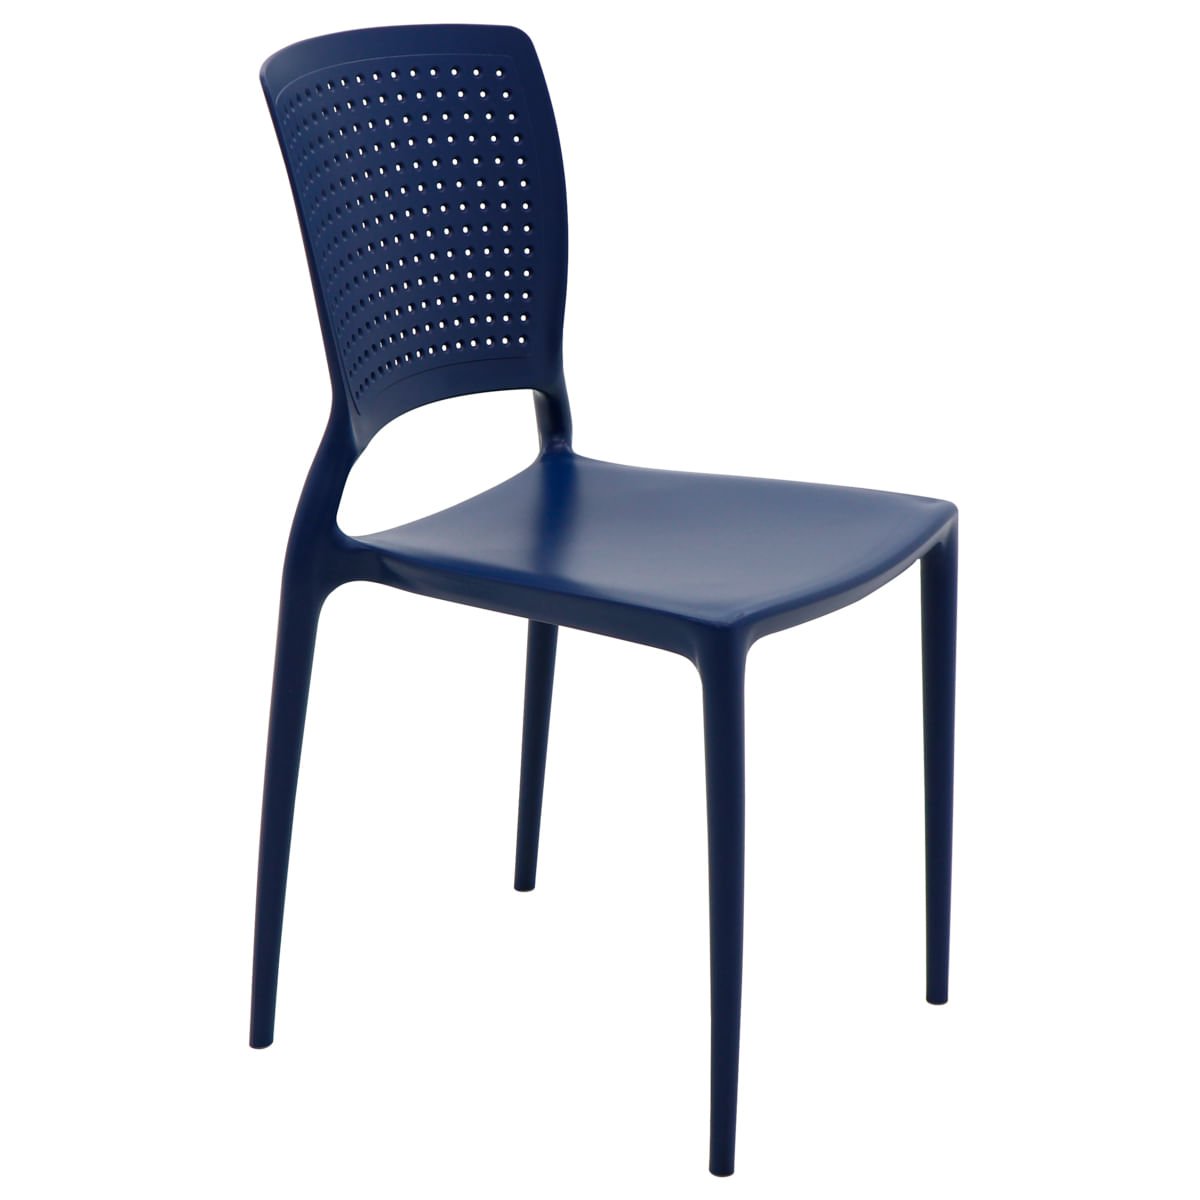 Cadeira Tramontina Safira Summa em Polipropileno e Fibra de Vidro Azul Yale - 1